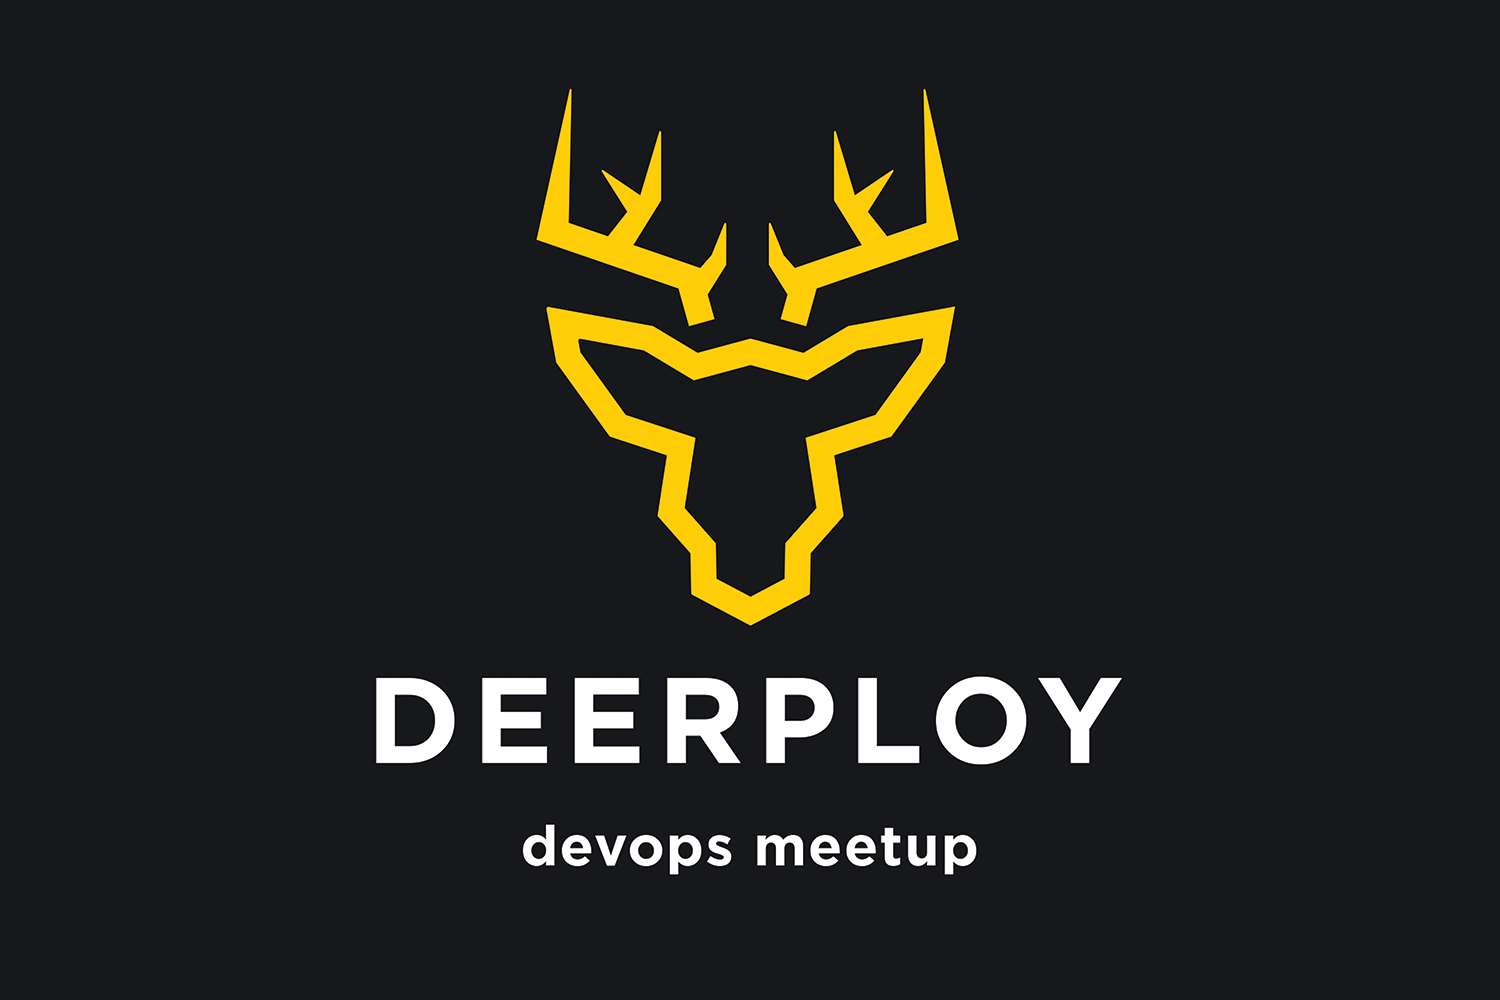 Deerploy DevOps MeetUp - 1